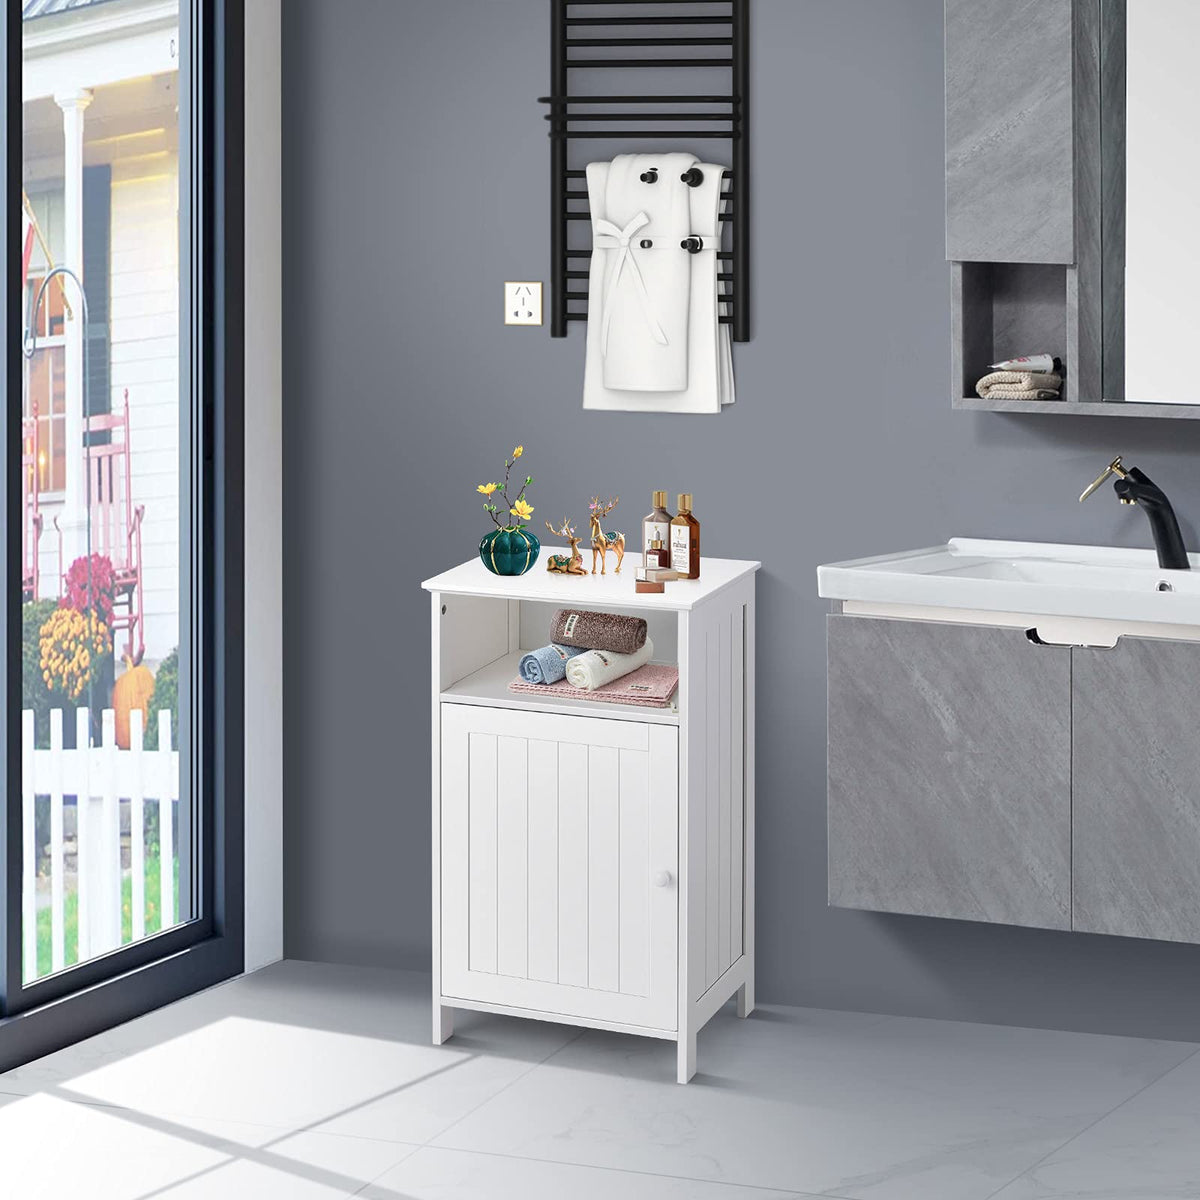 Giantex Bathroom Floor Storage Cabinet, Freestanding Wooden Single Door Side Cabinet